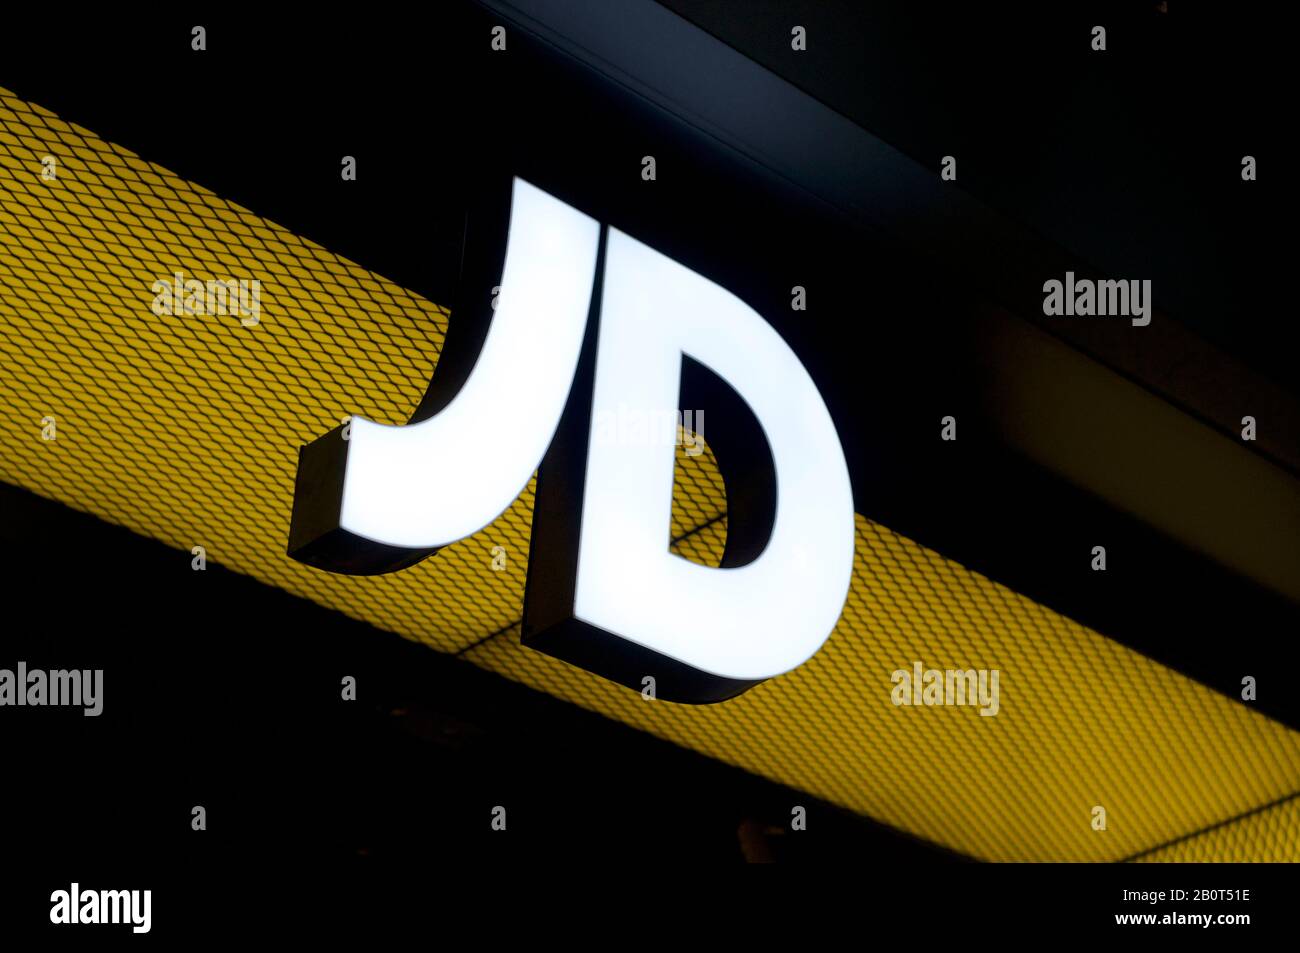 Brisbane, Queensland, Australie - 17 janvier 2020 : vue d'un panneau lumineux JD Sports accroché à l'entrée du magasin à Brisbane. JD Sports est un s Banque D'Images